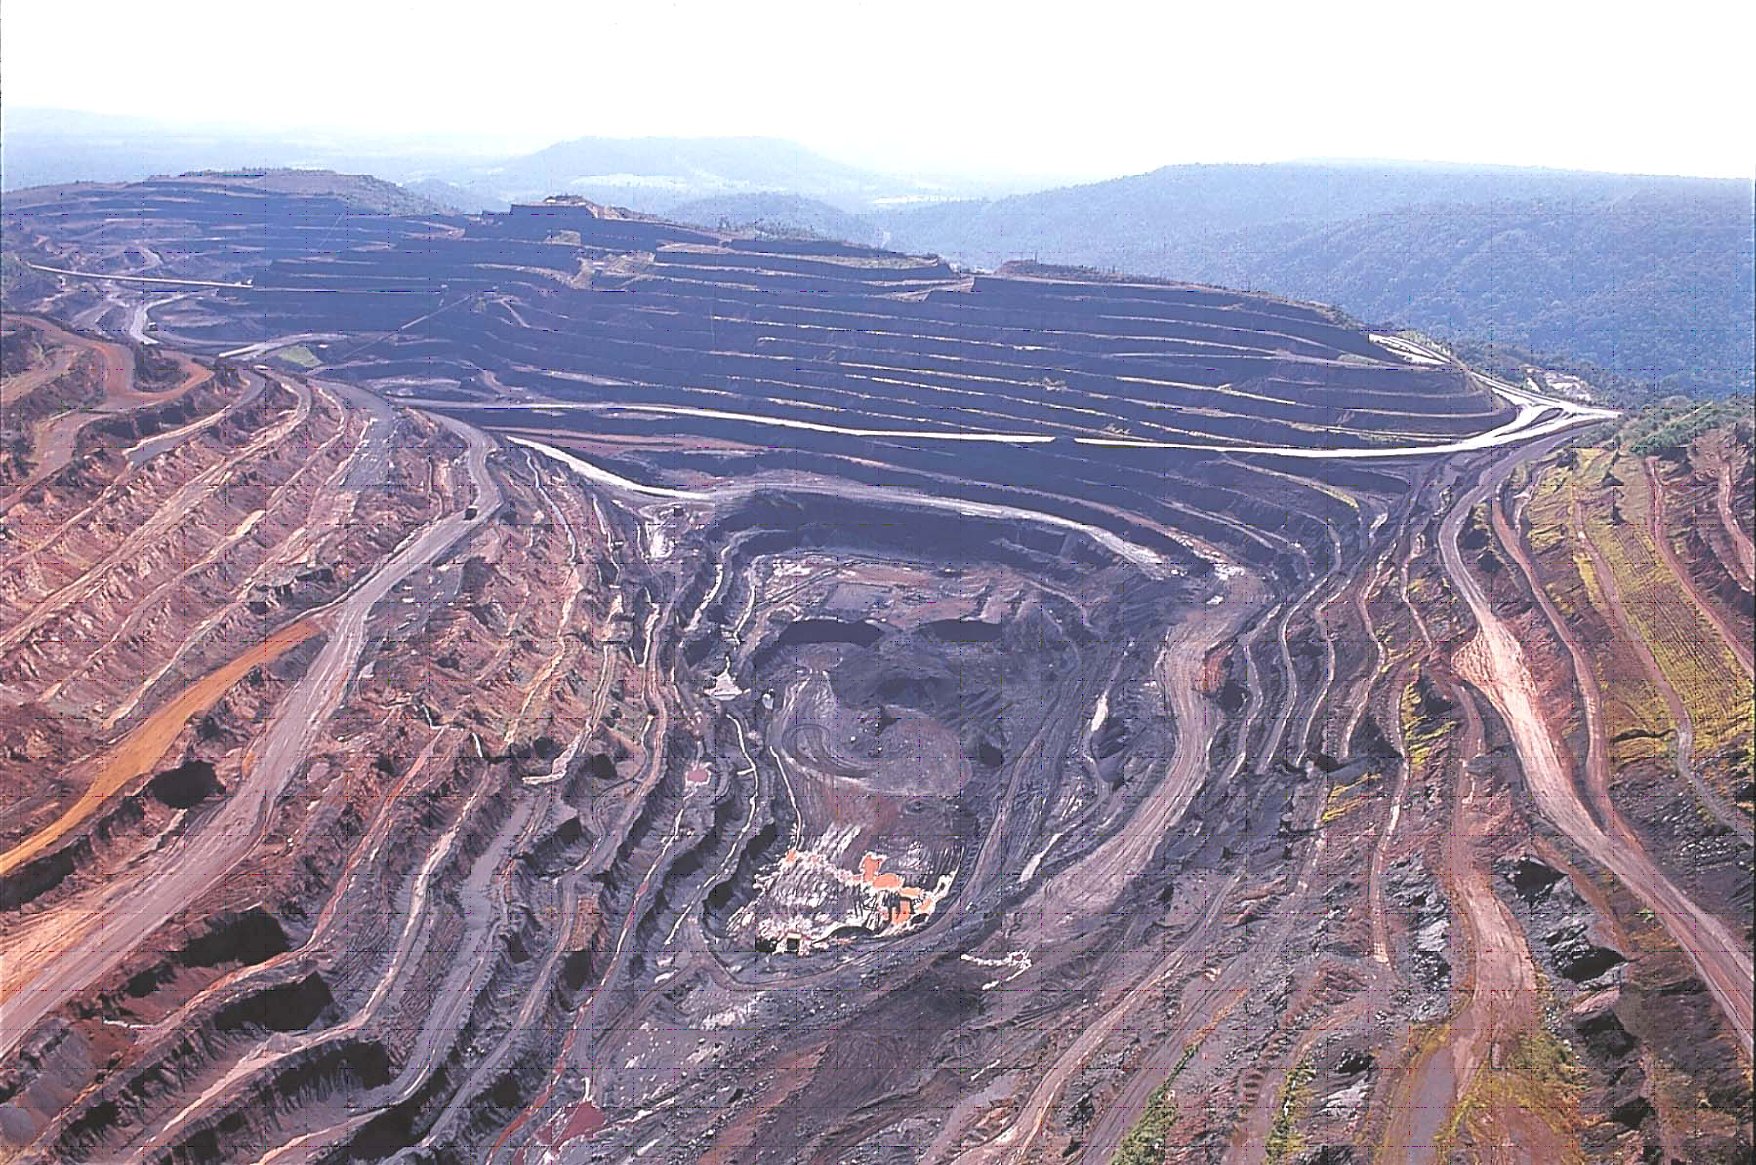  Vale pode vender 30% das operações de minério de ferro em Carajás